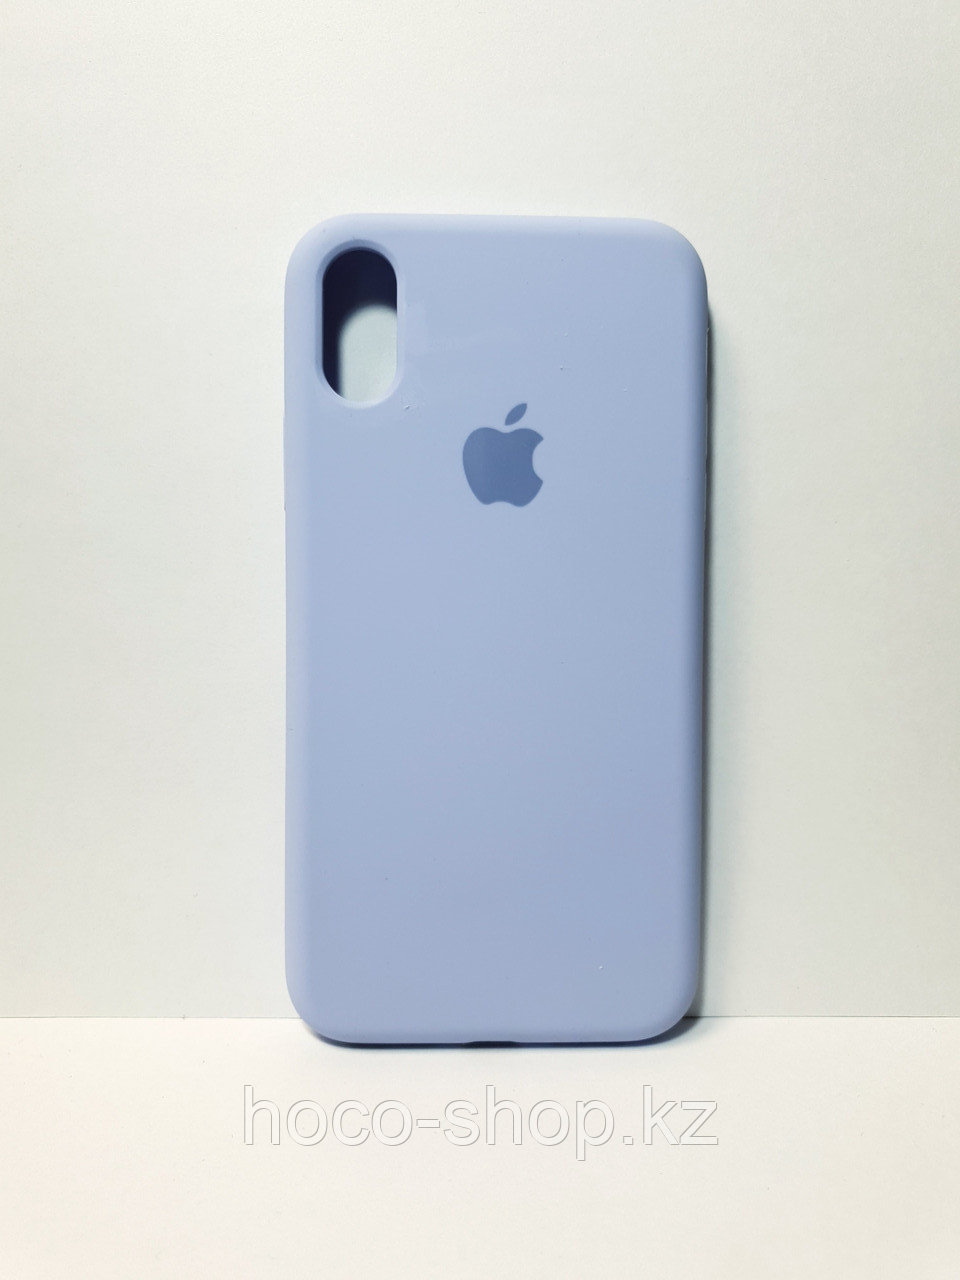 Защитный чехол для iPhone X/Xs Soft Touch силиконовый, голубой